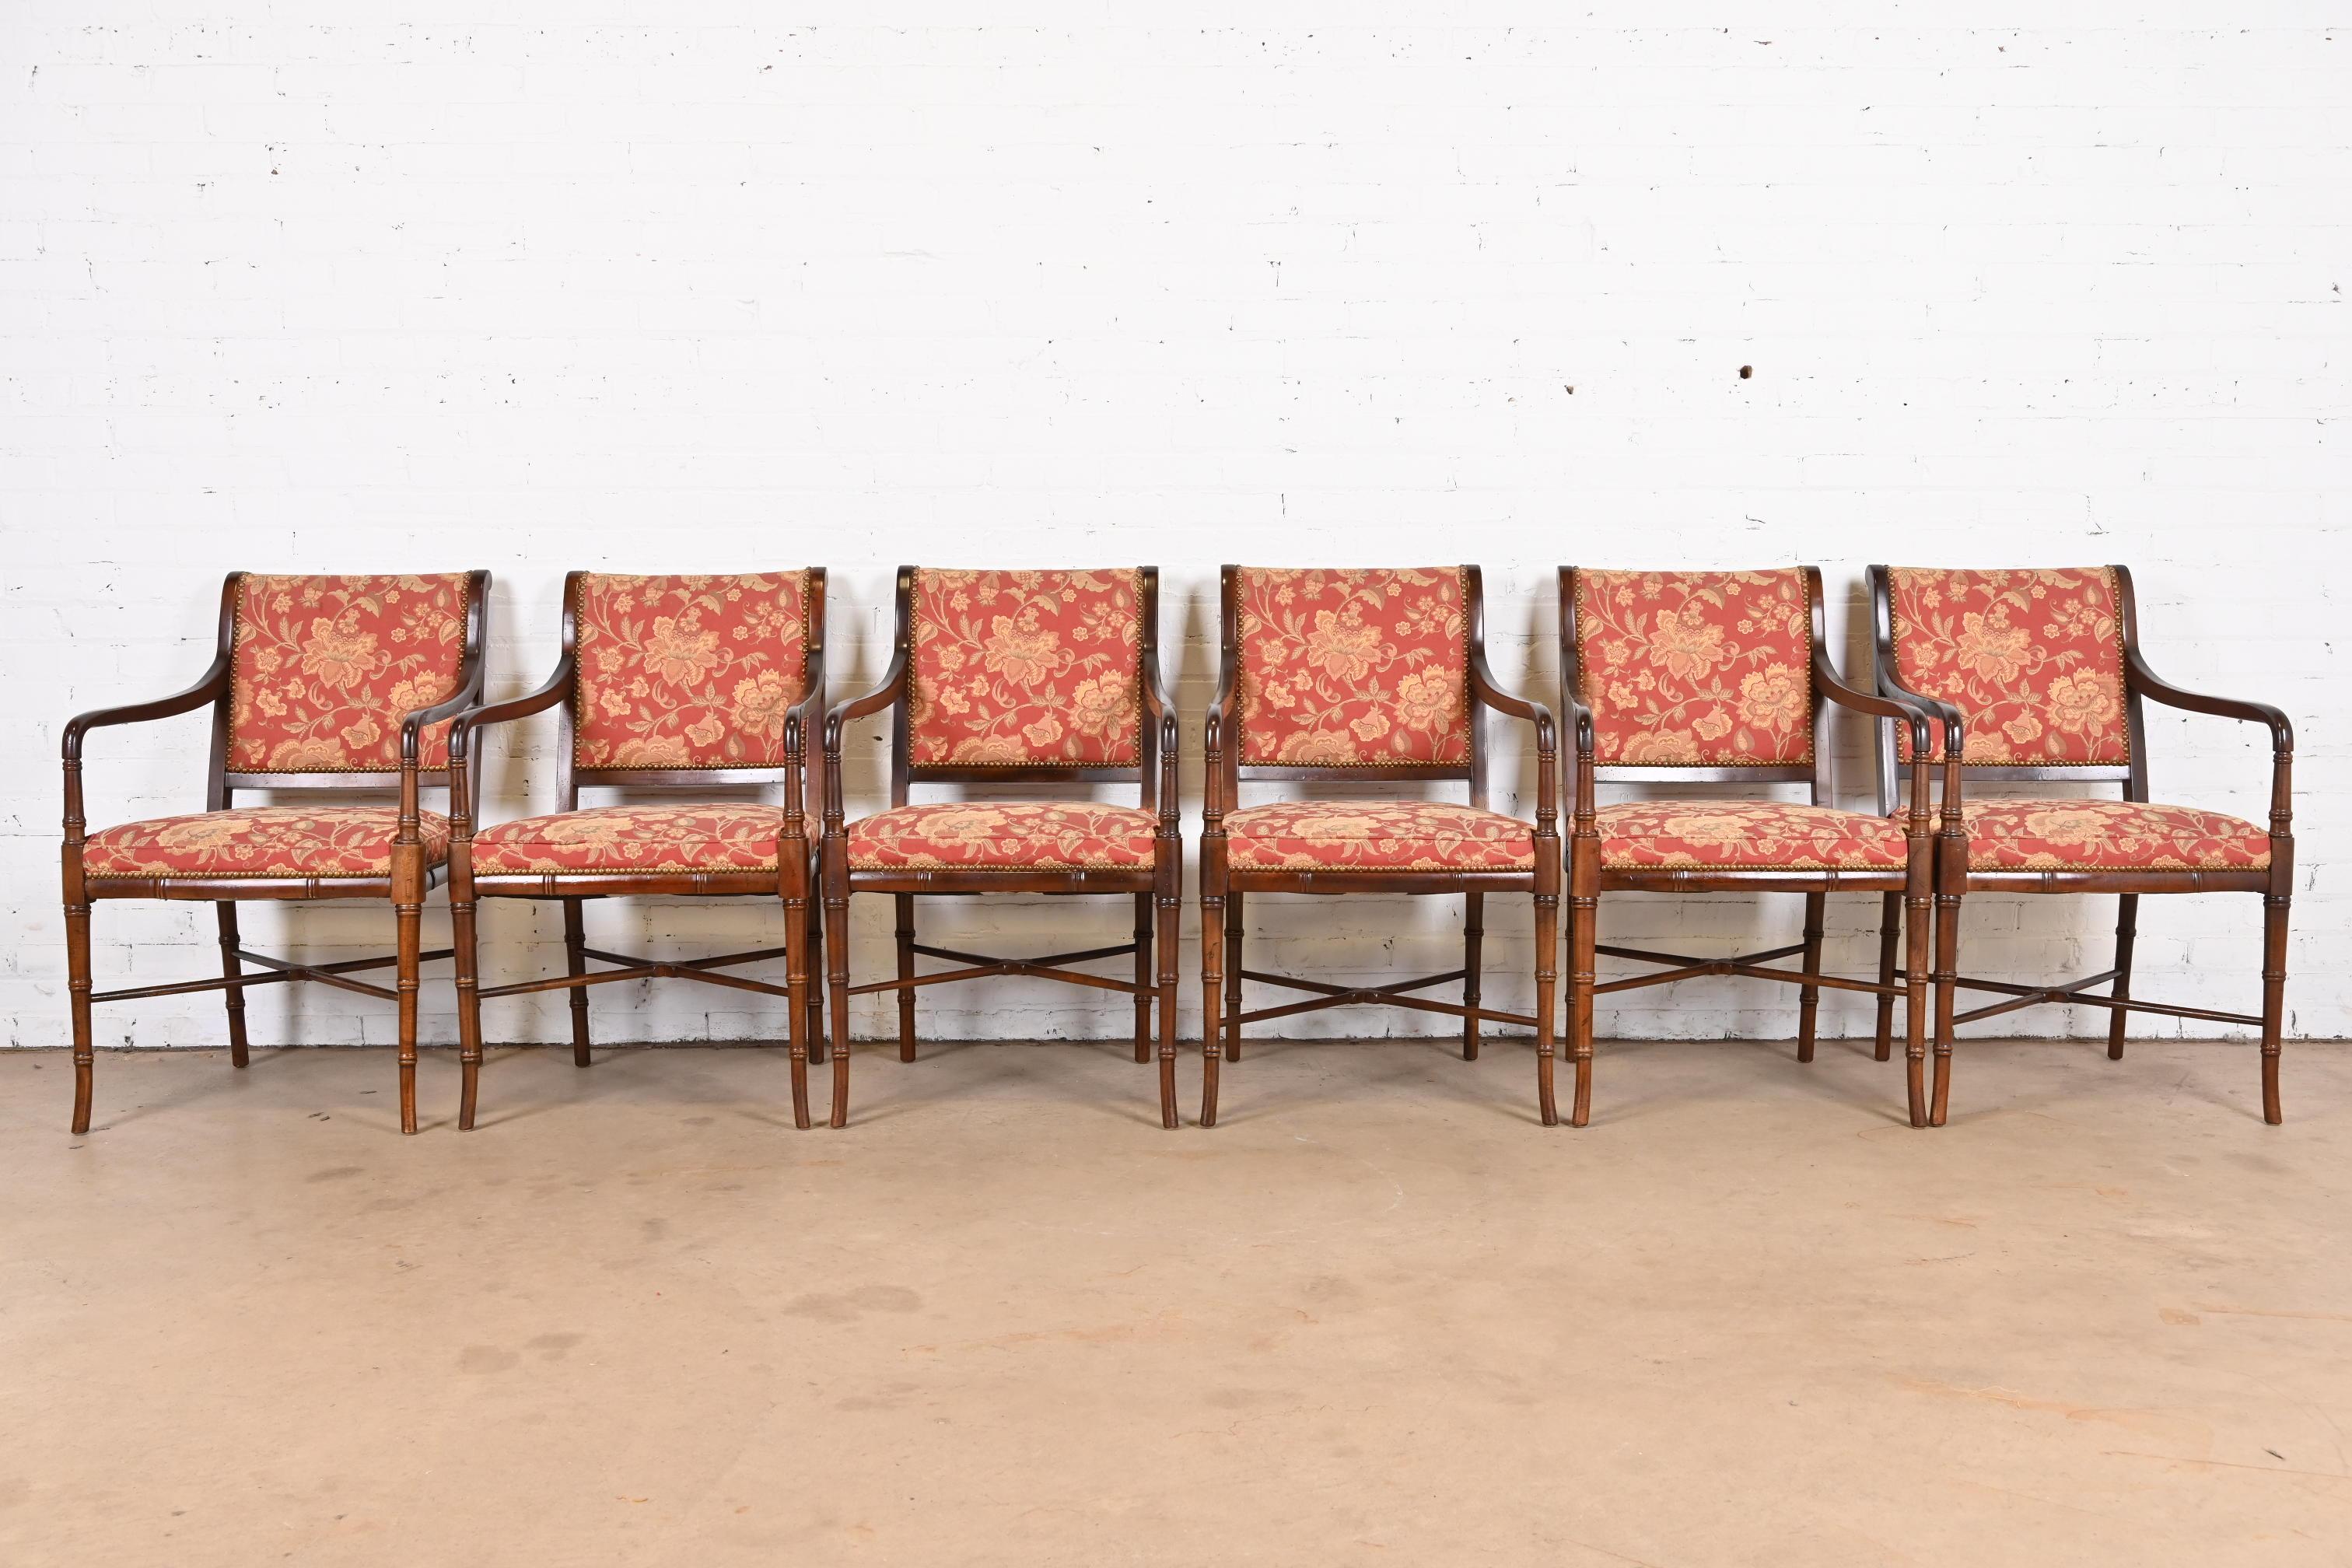 Ein prächtiger Satz von sechs Esstischsesseln im Regency-Stil

Nach dem Vorbild von Baker Furniture

Von Southwood

USA, Ende des 20. Jahrhunderts

Rahmen aus Bambusholzimitat mit gepolsterten Sitzflächen und Rückenlehnen aus geblümtem Stoff mit